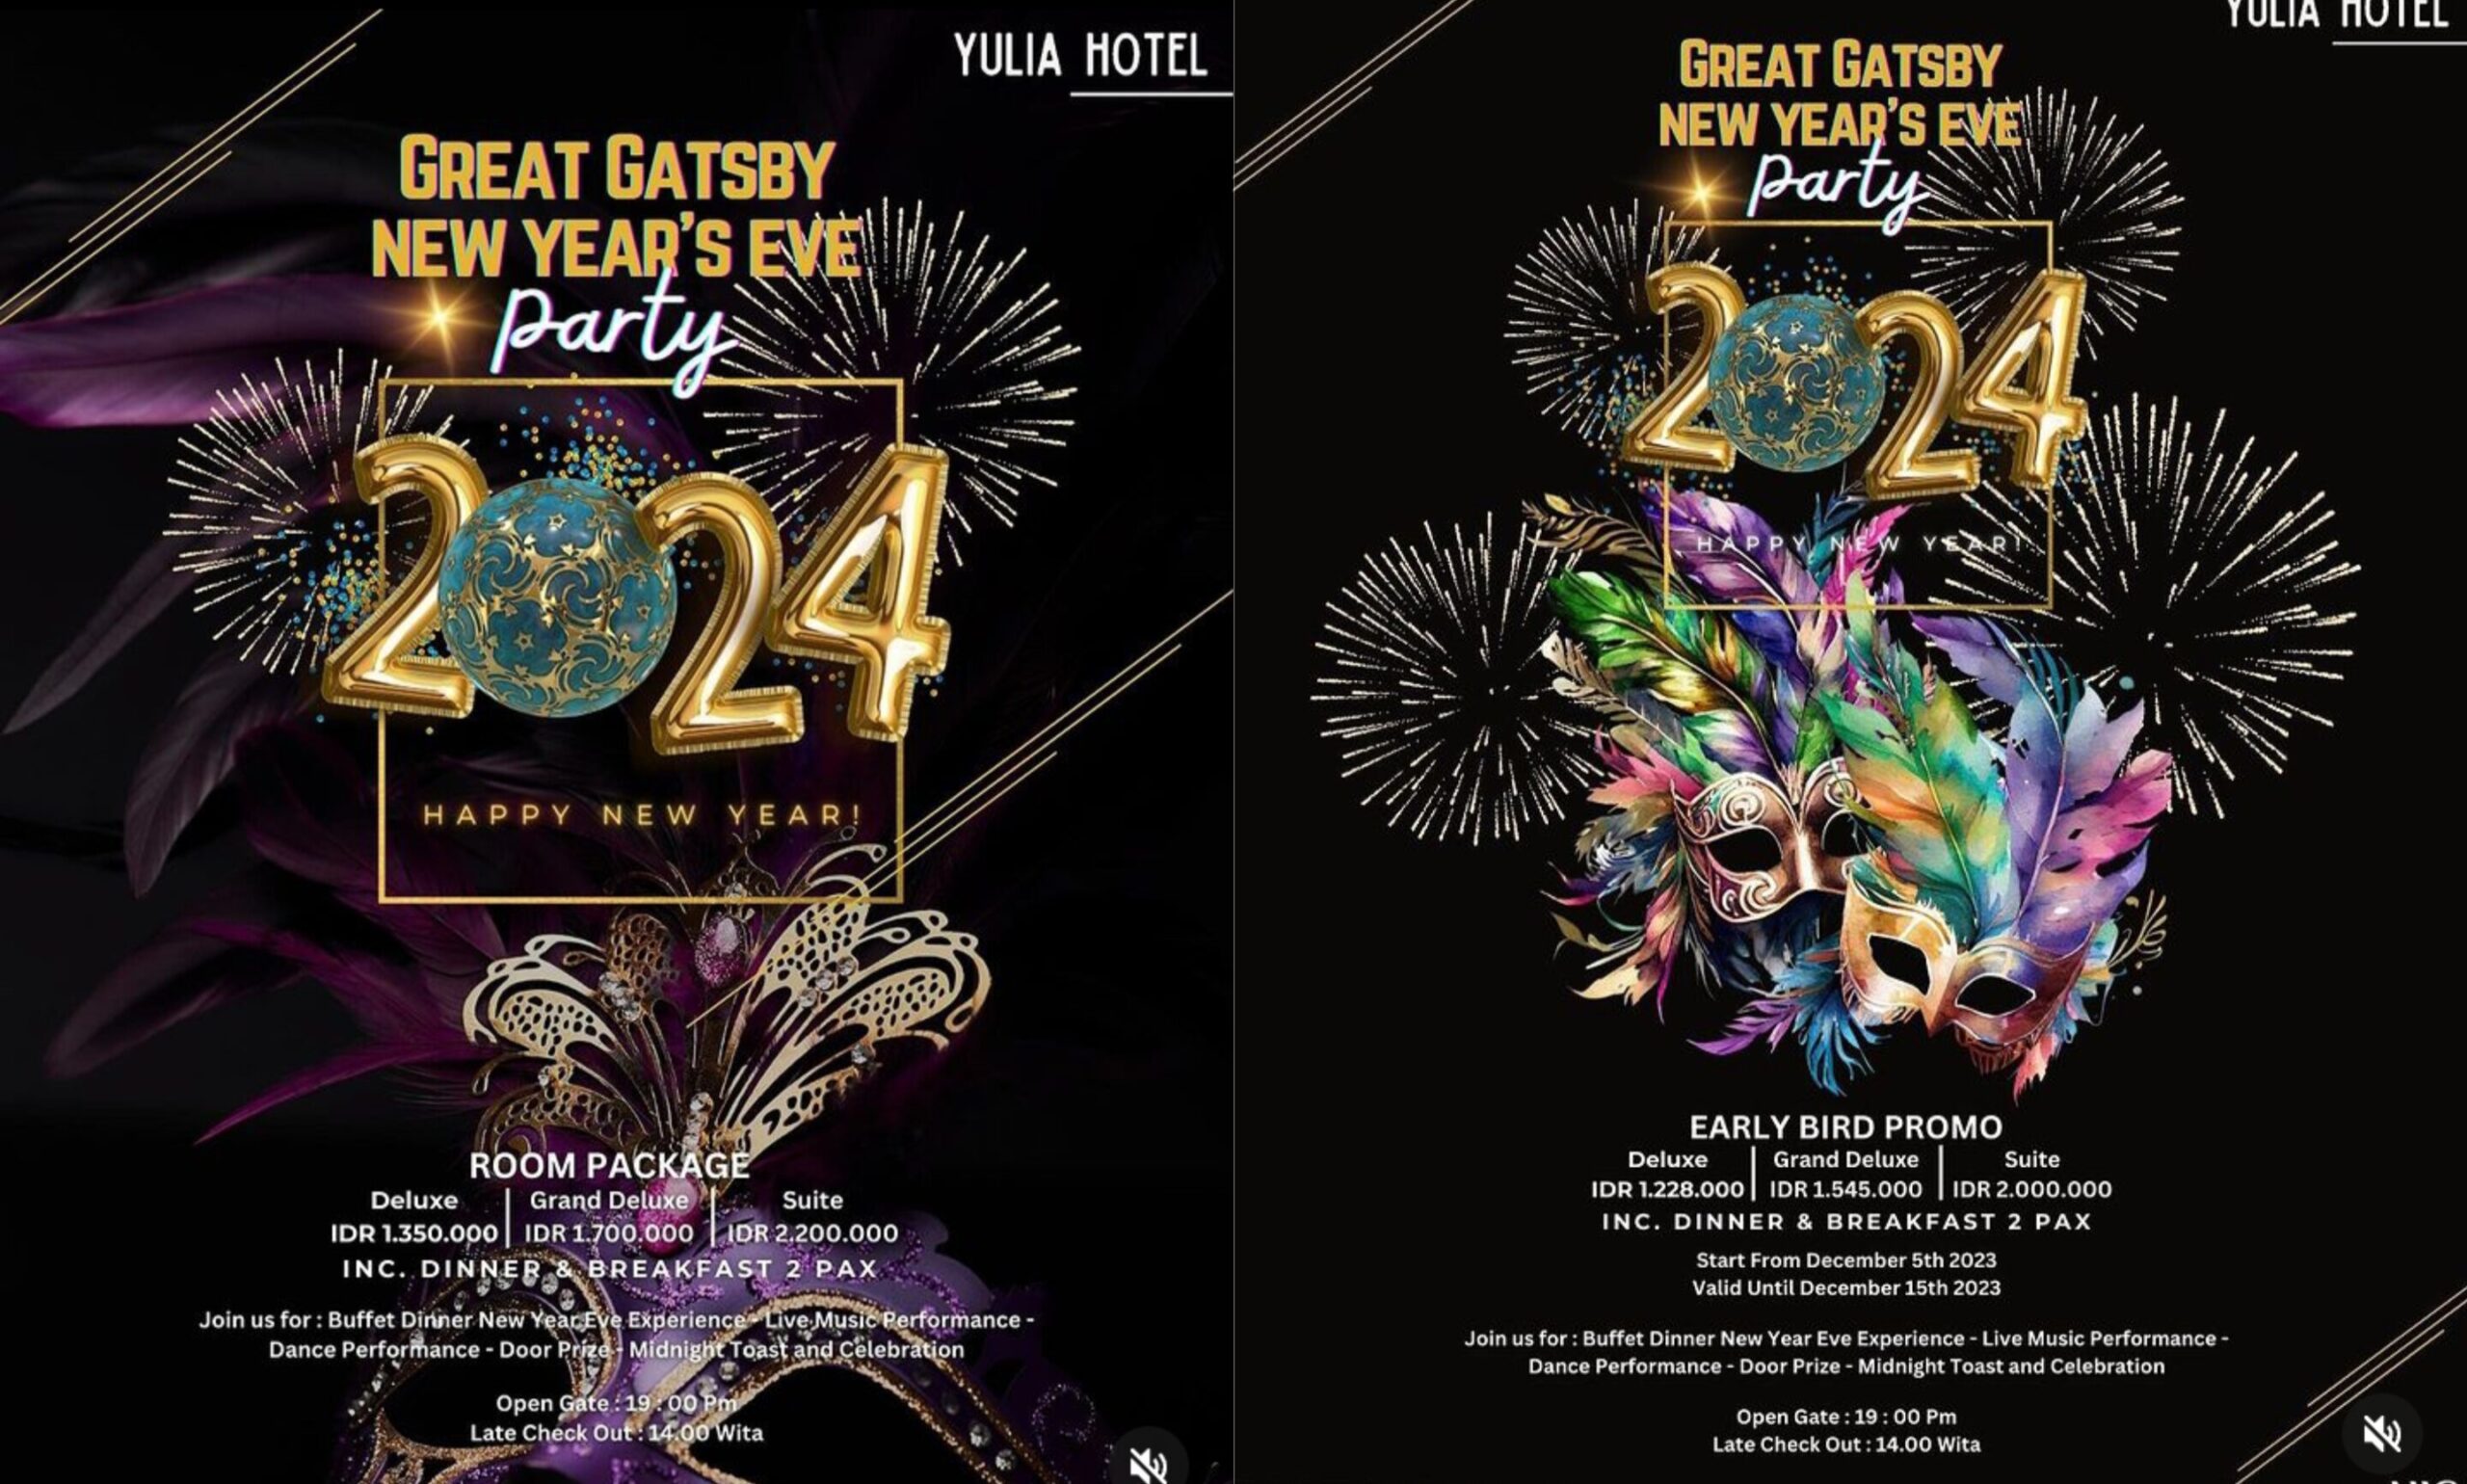 Great Gatsby New Year's Eve Party Yulia Hotel Gorontalo